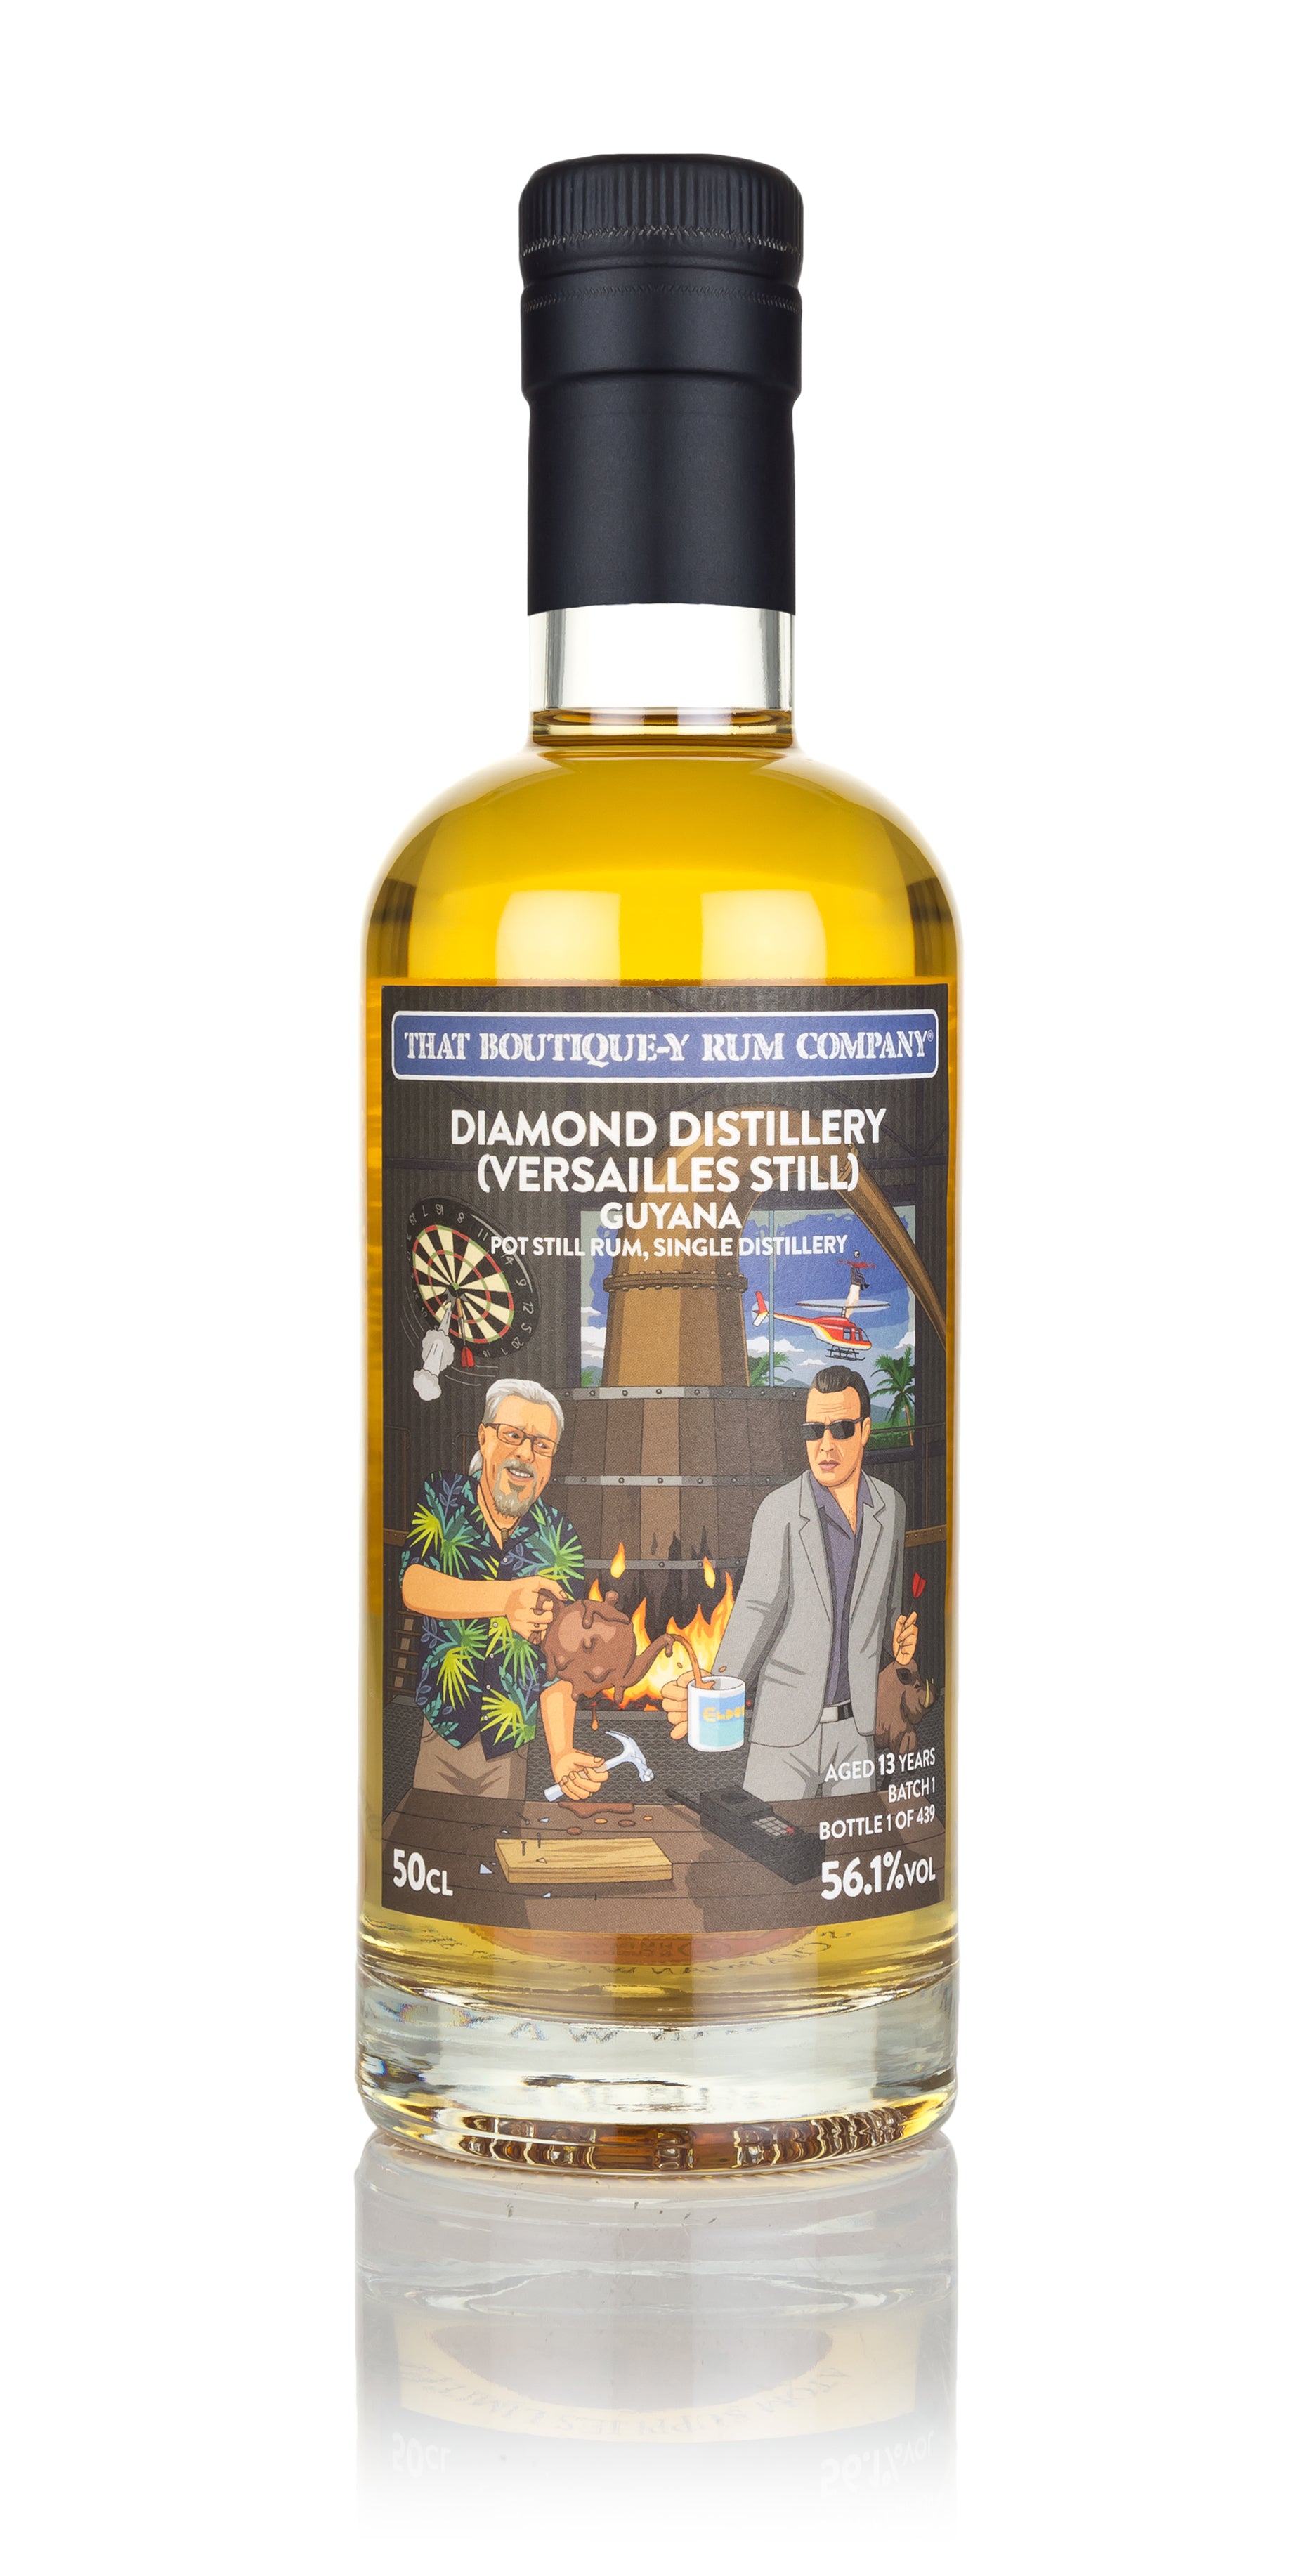 Diamond Distillery (Versailles Still) – That Boutique-y Rum Company